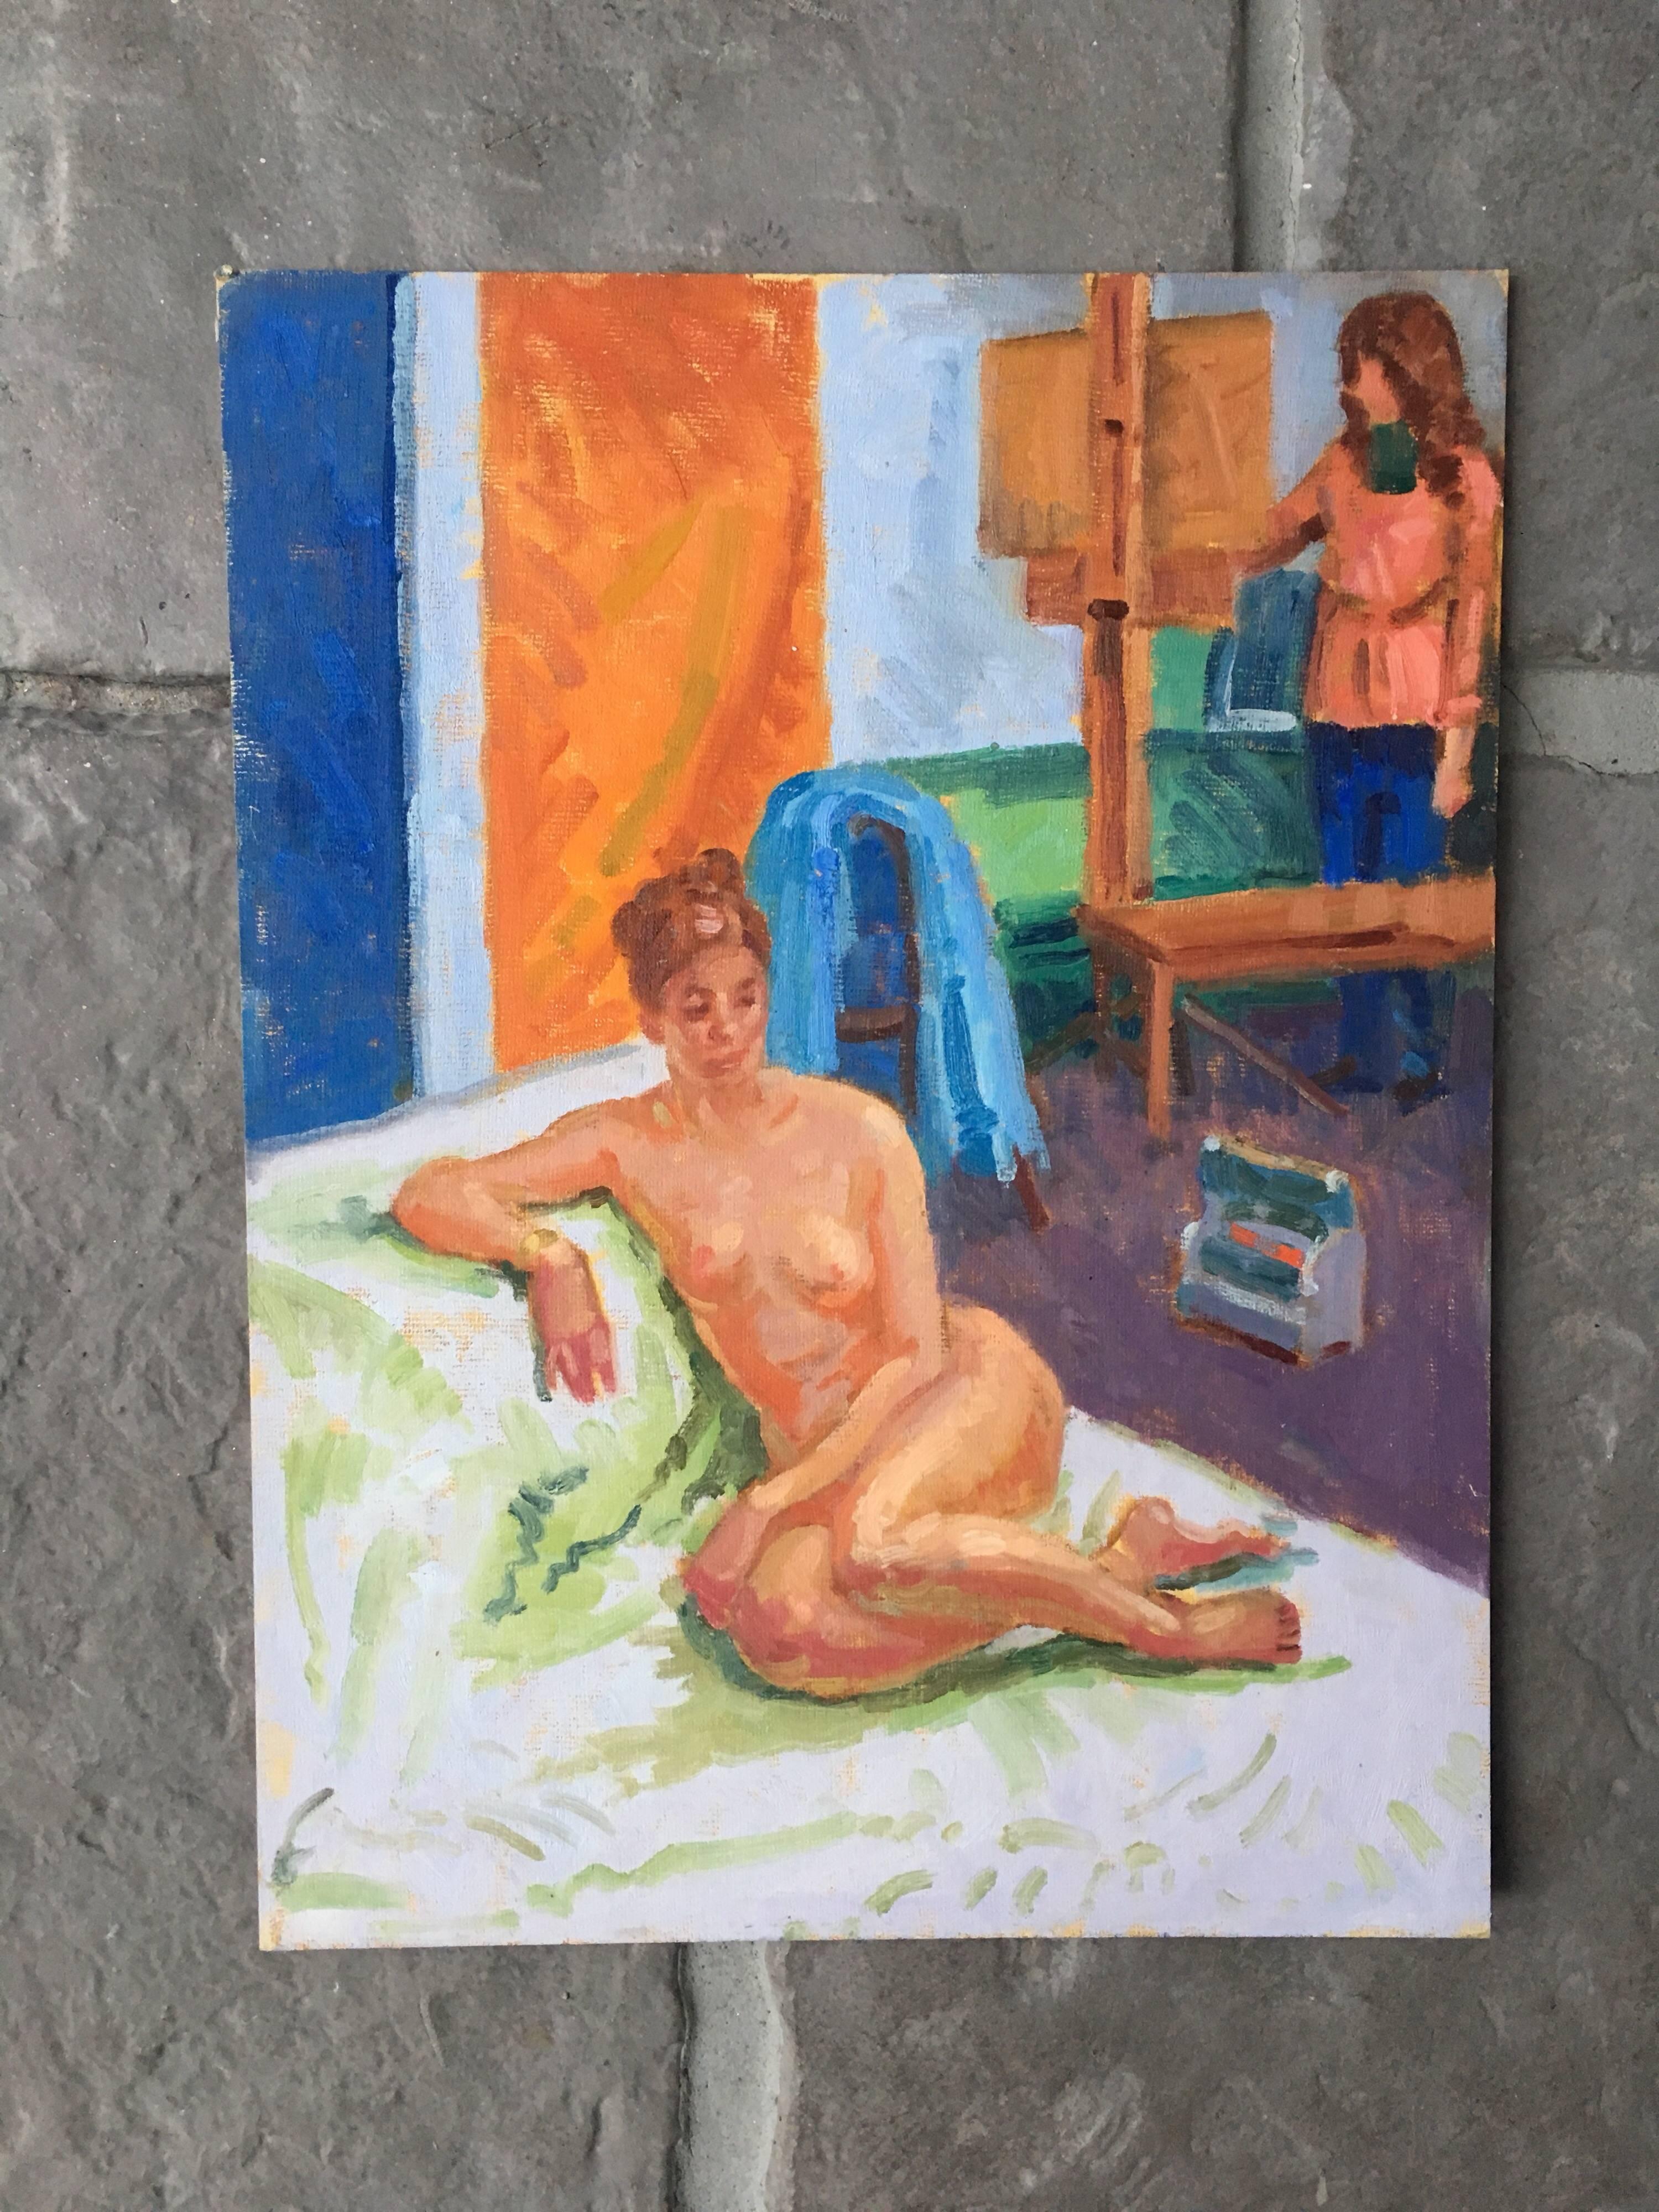 Modell der Künstlerin, nudefarbenes impressionistisches Ölgemälde  – Painting von J.B. Holmes